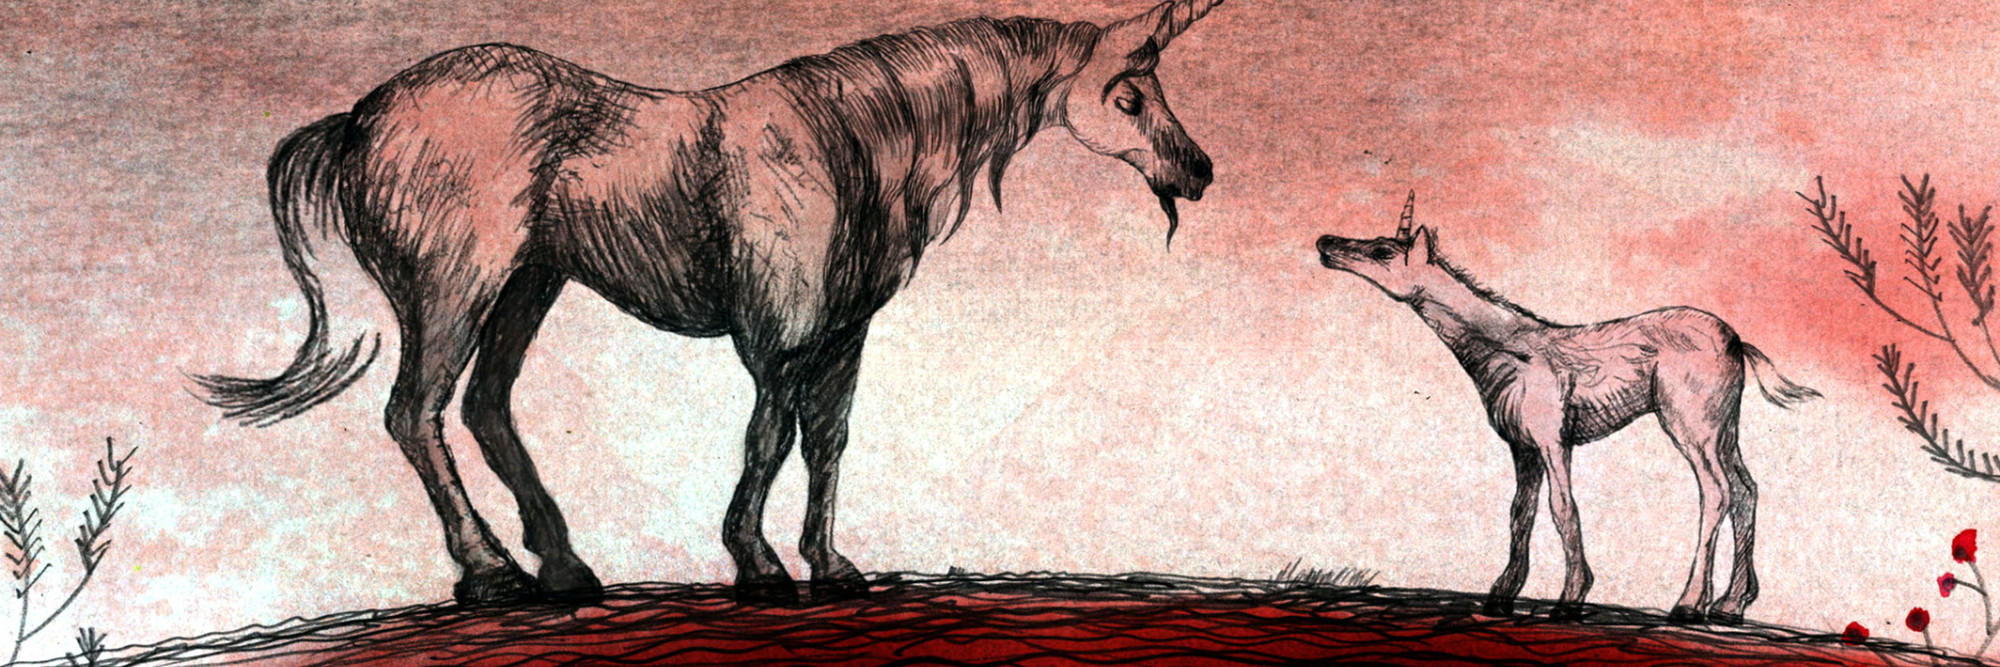 Sangre de Unicornio (Unicorn Blood). 2013. Spain. Directed by Alberto Vázquez